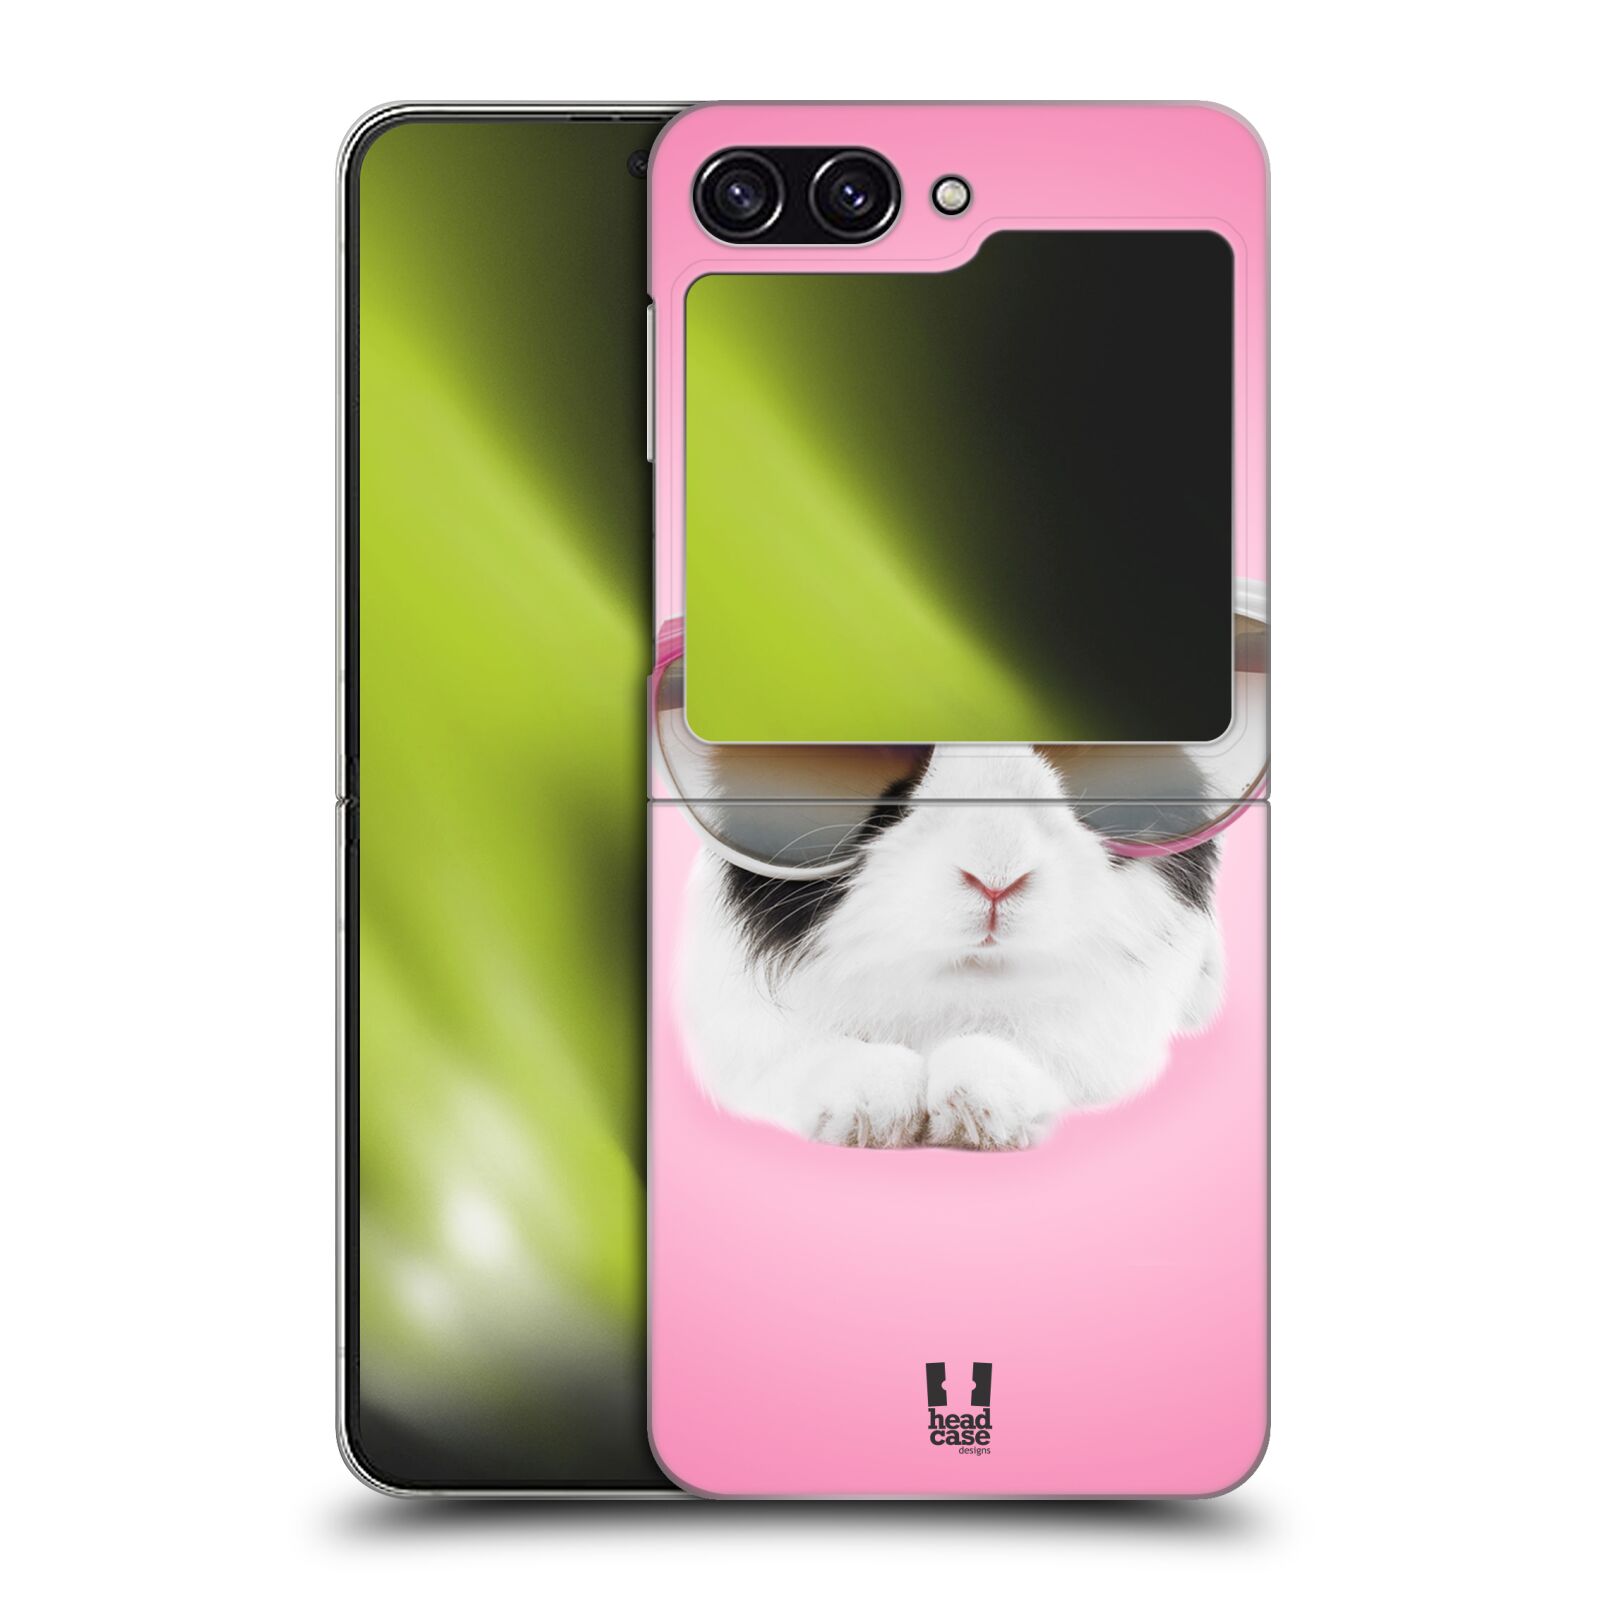 Plastový obal HEAD CASE na mobil Samsung Galaxy Z Flip 5 vzor Legrační zvířátka roztomilý králíček s brýlemi růžová